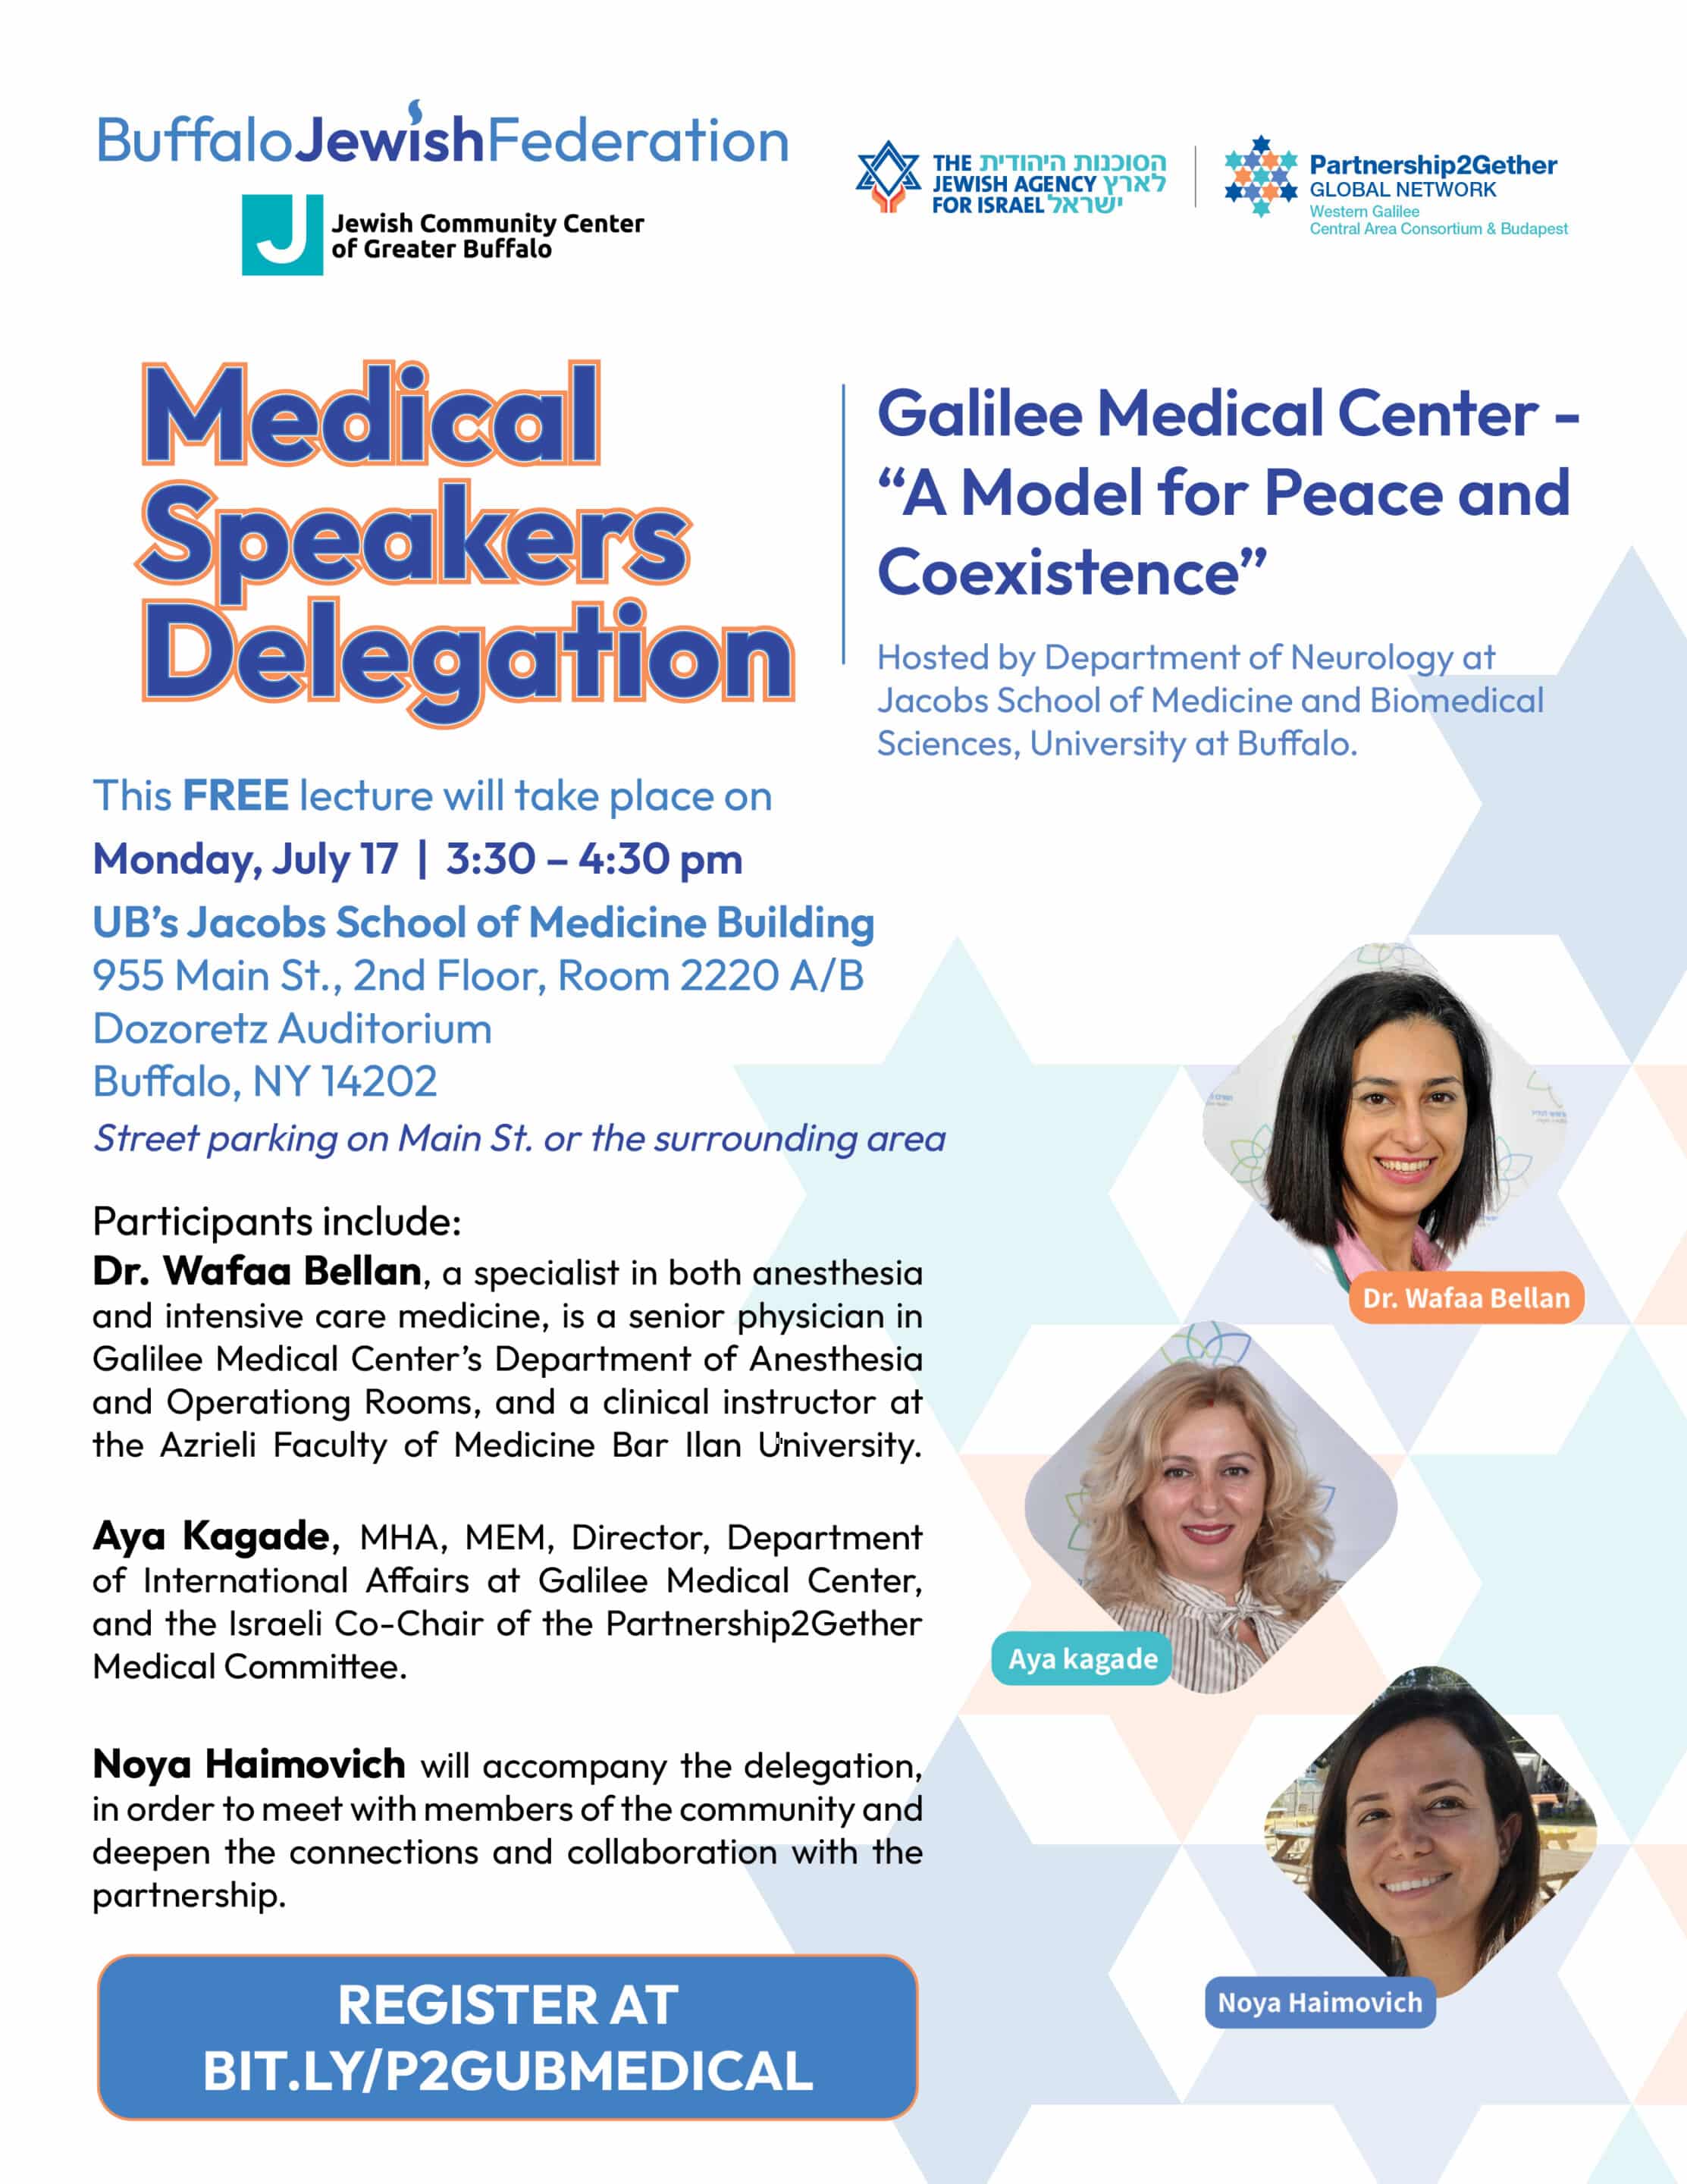 Medical Speakers Delegation - medical delegation flyer scaled